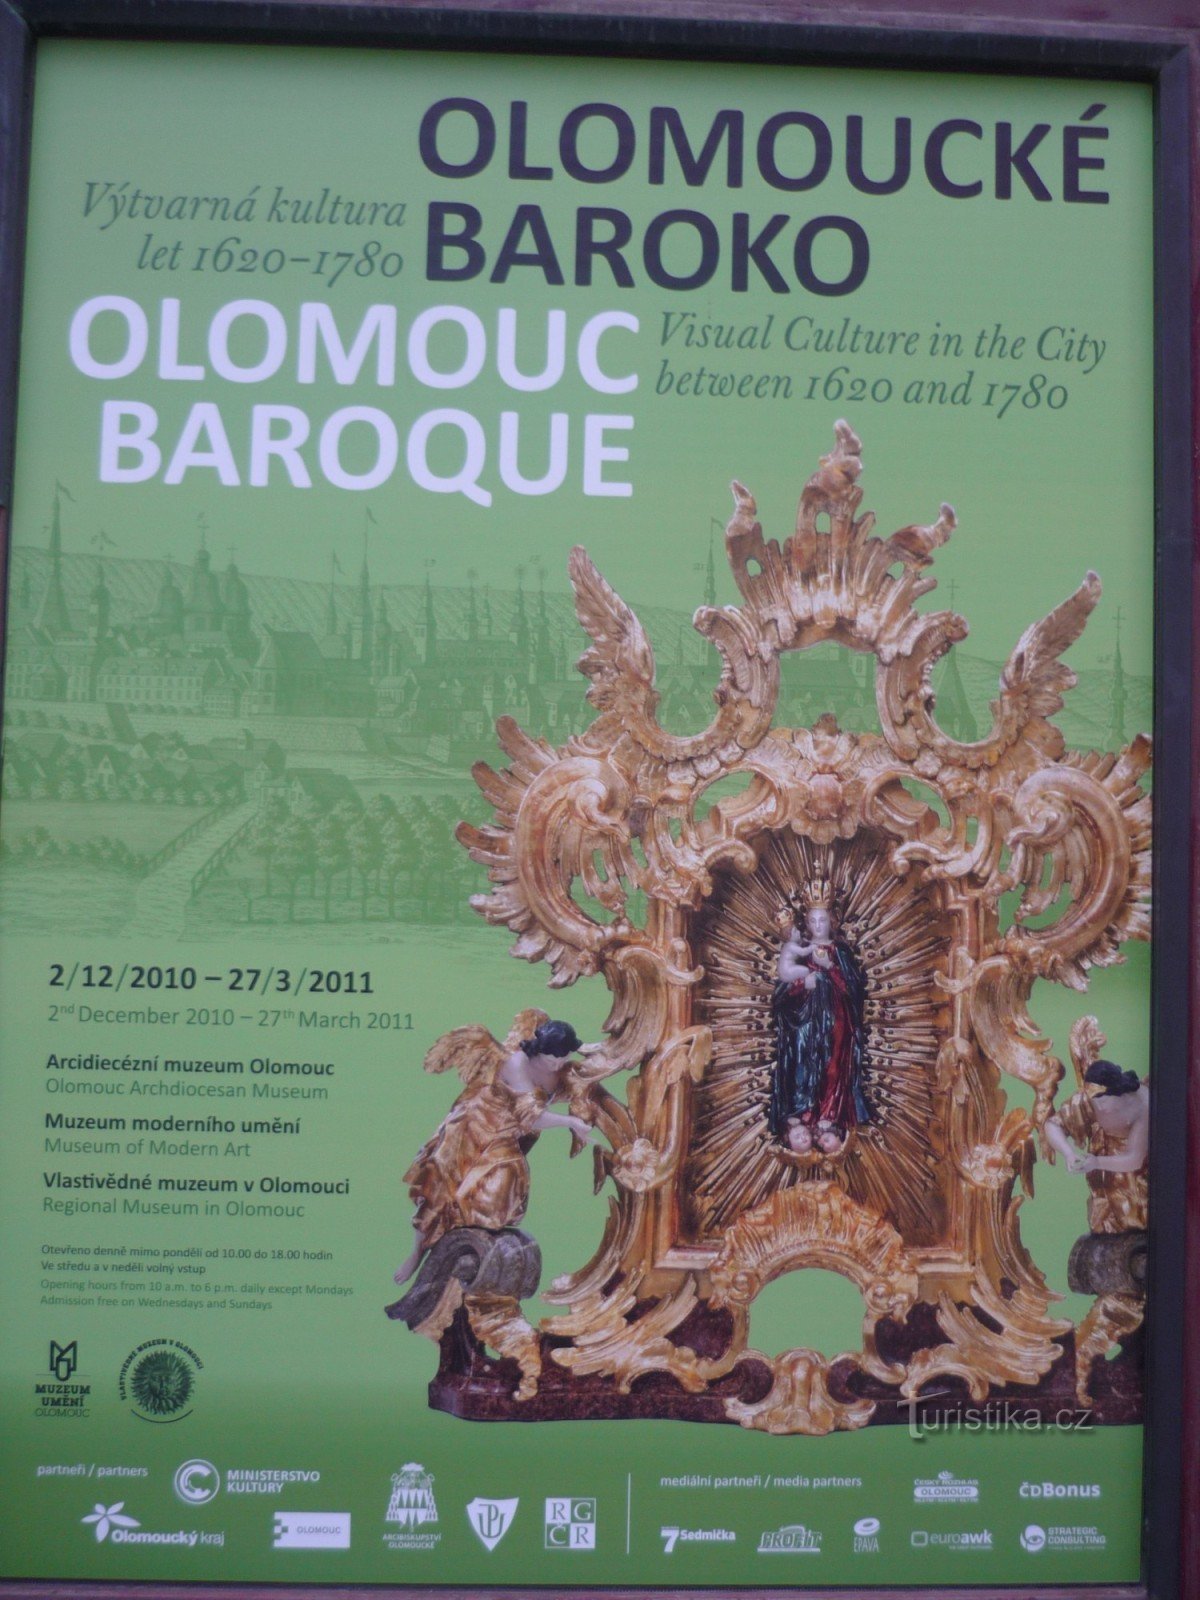 Olomoucin barokki - valokuvajuliste